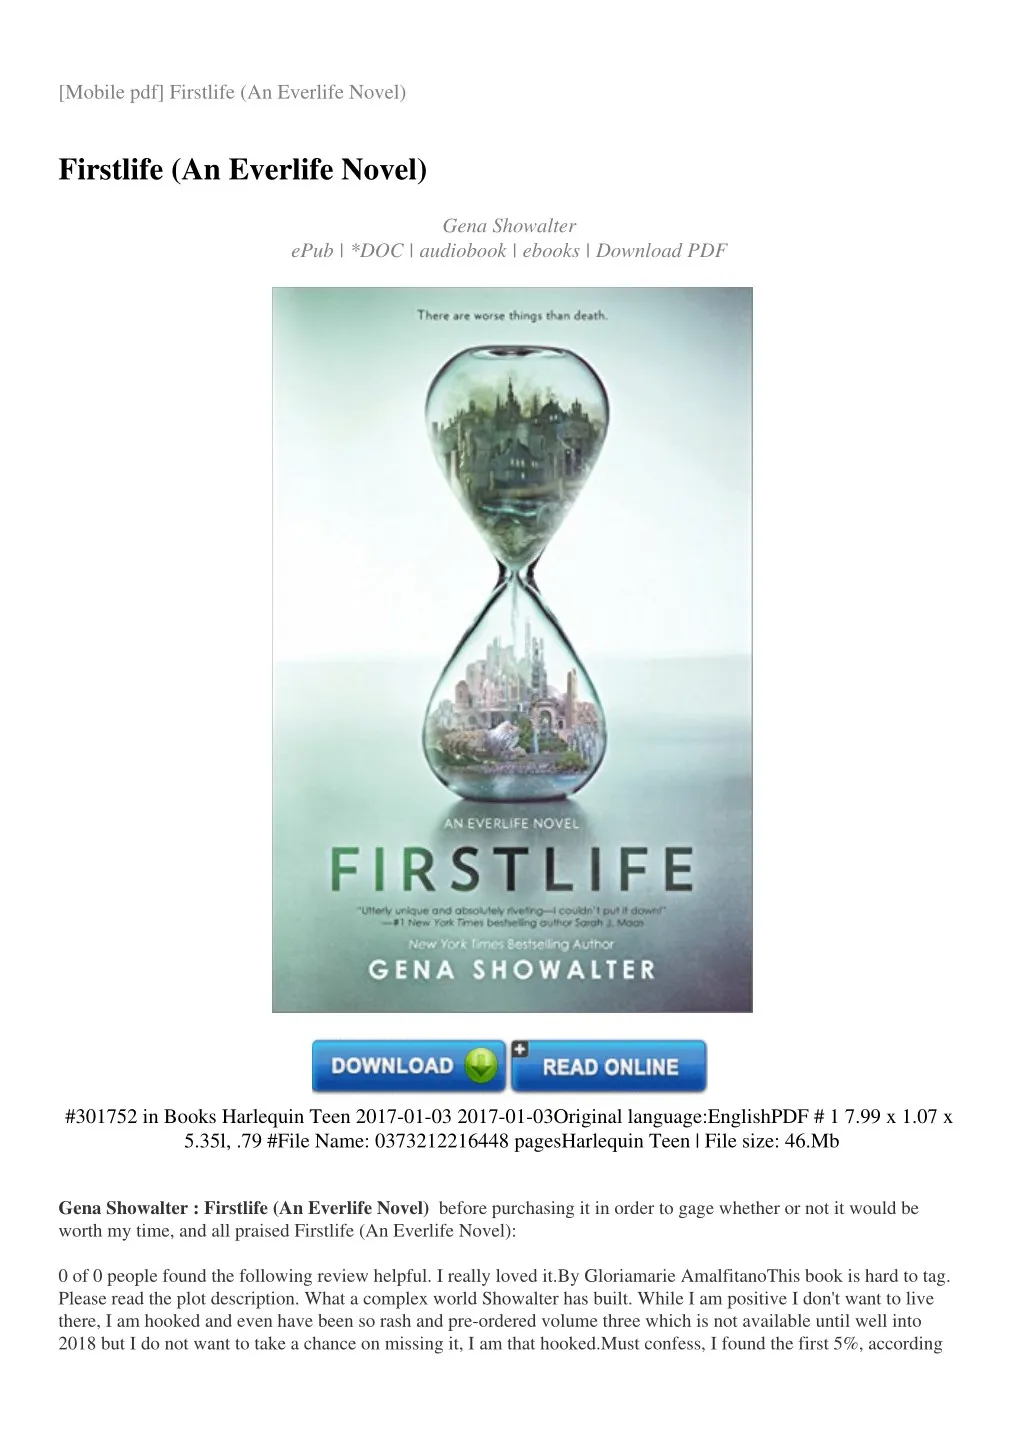 mobile pdf firstlife an everlife novel